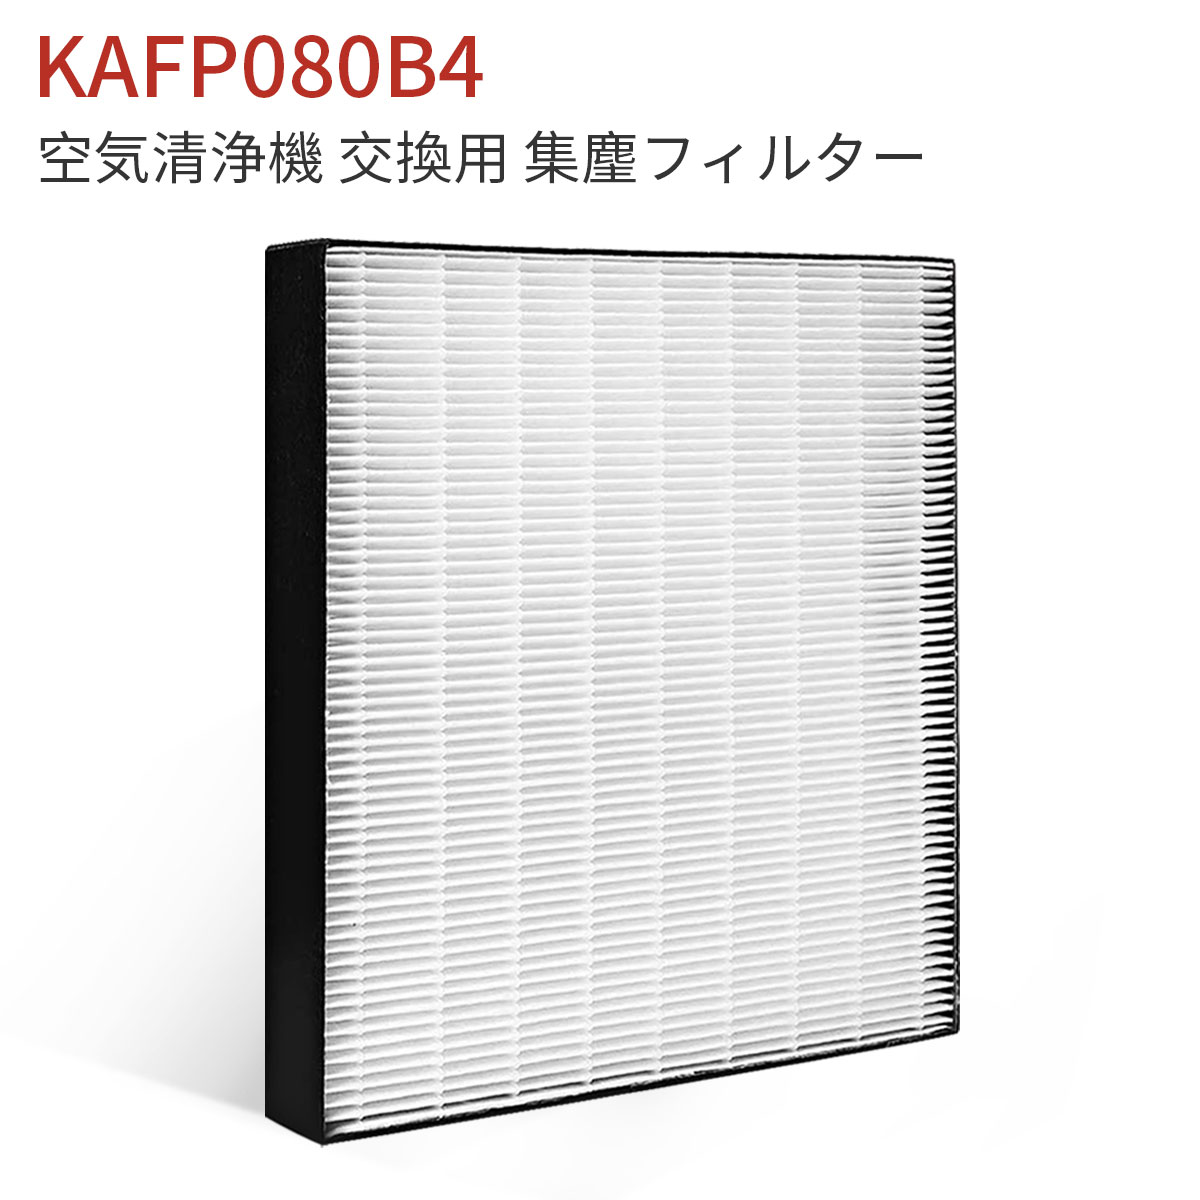 ダイキン KAFP080B4 集塵フィルター kafp080b4 加湿空気清浄機 フィルター KAFP080A4の代替品 交換用集じんフィルター (互換品/1枚入り)